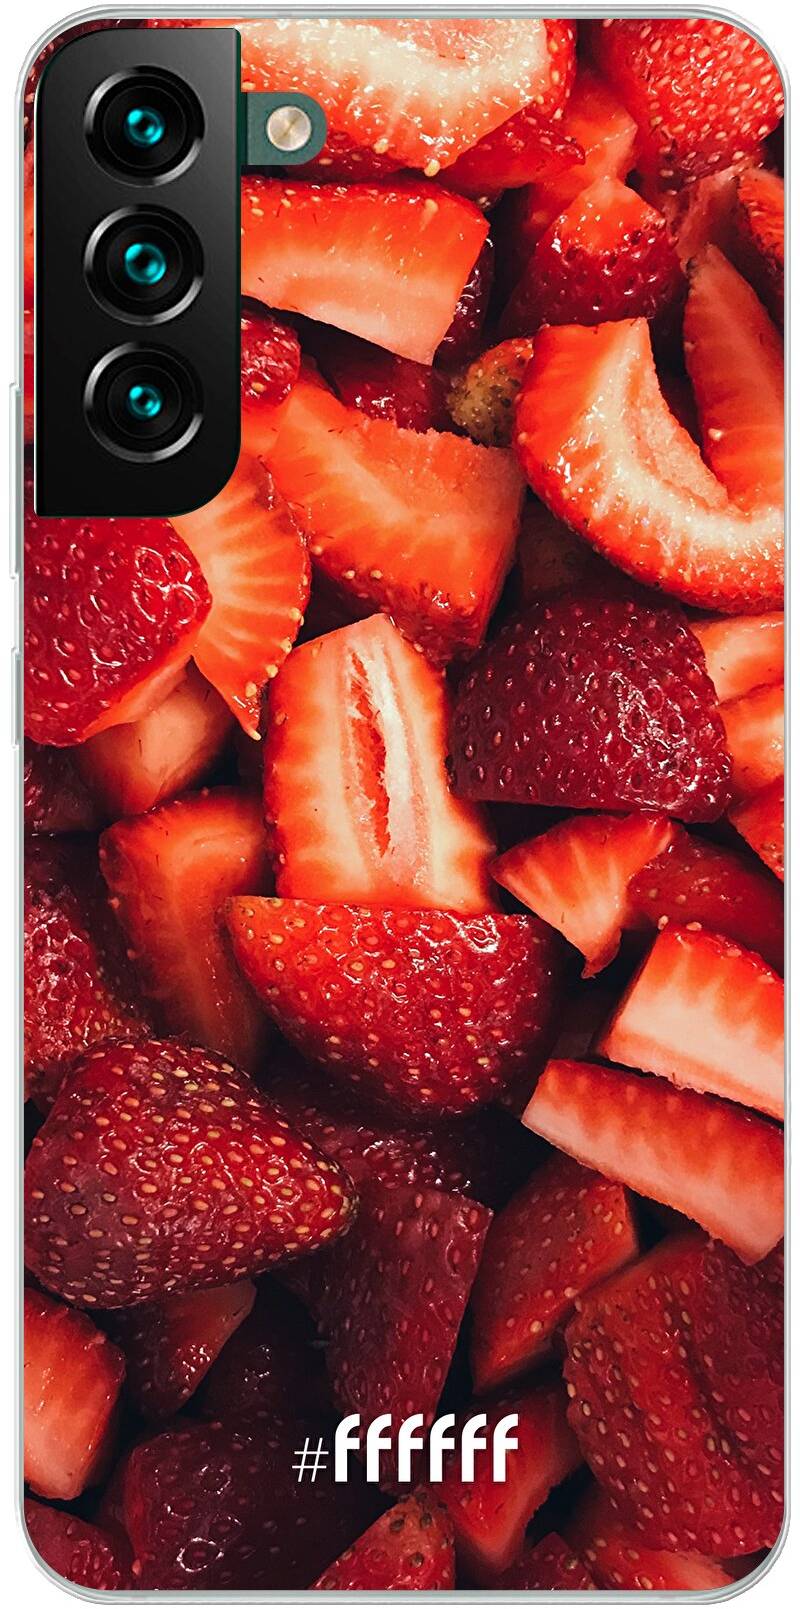 Strawberry Fields Galaxy S22 Plus